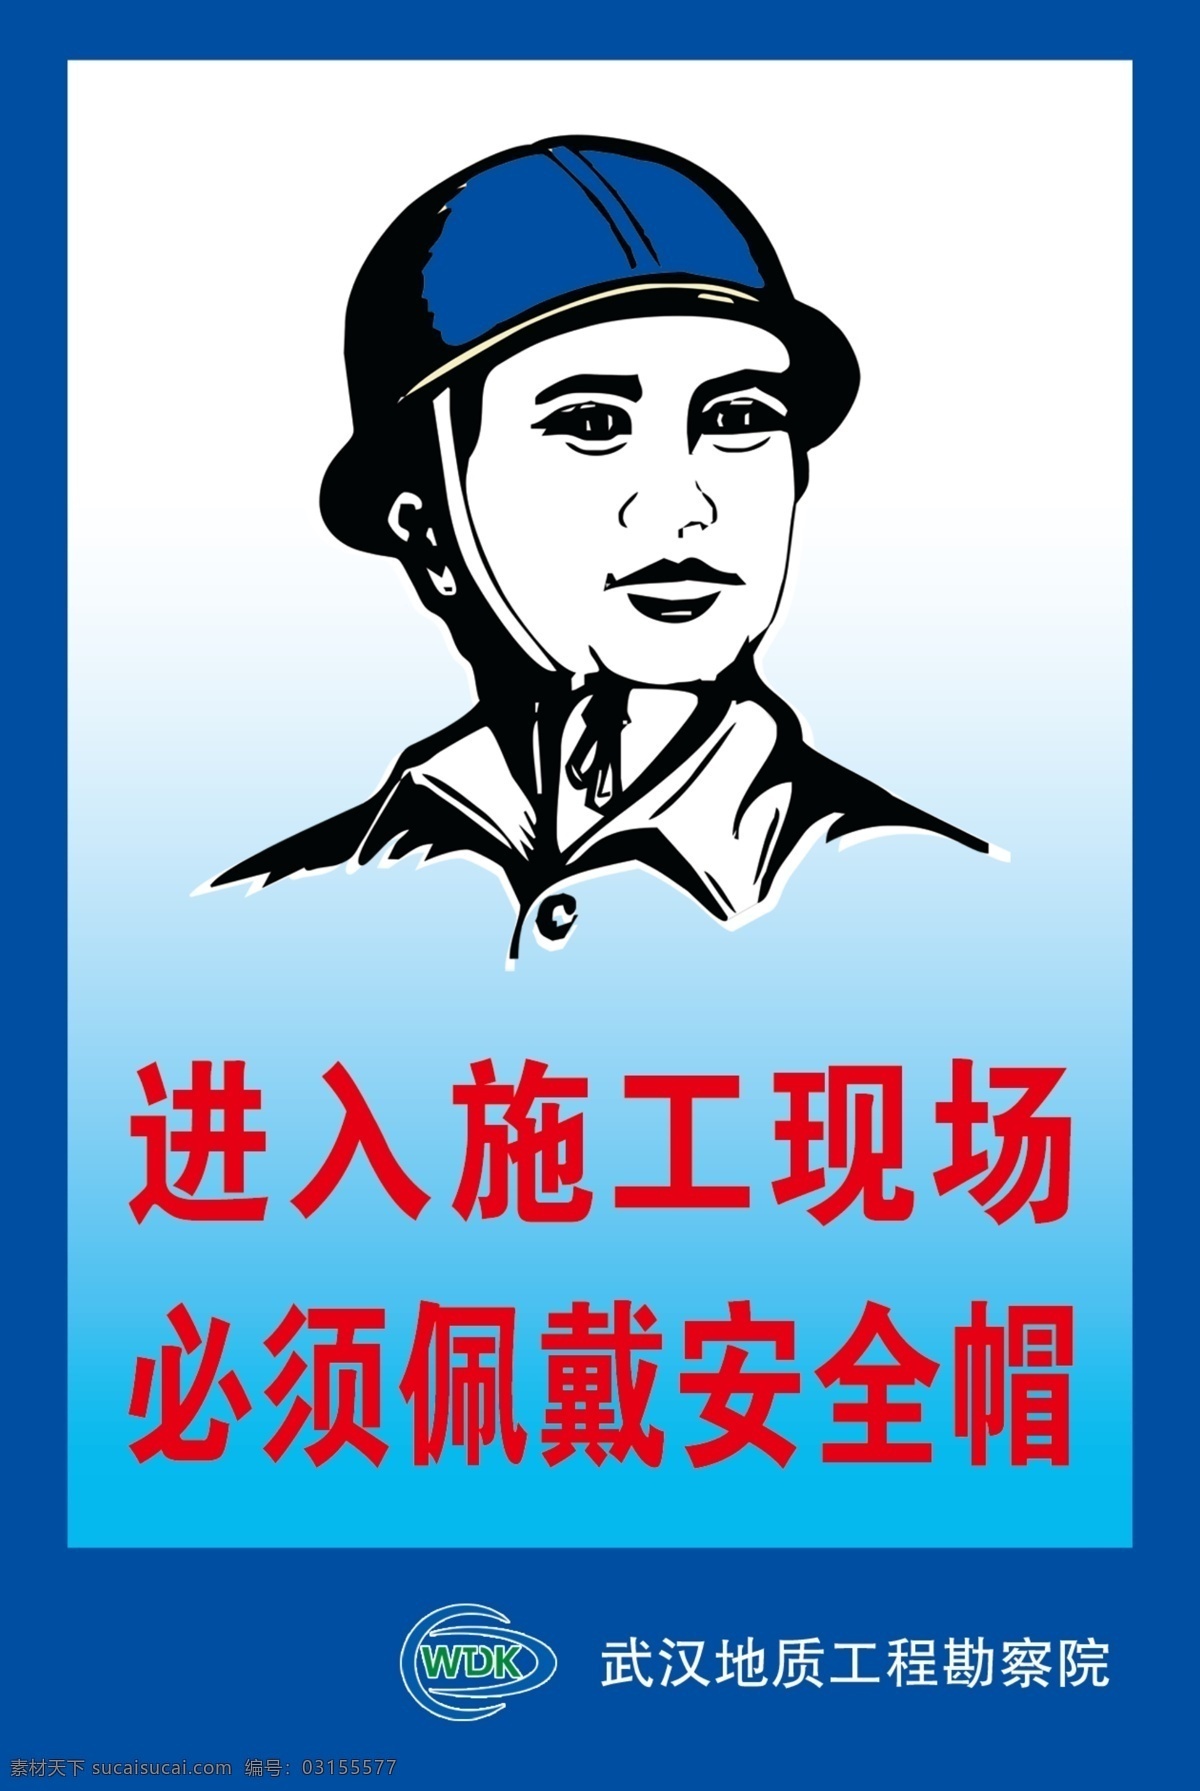 施工现场 佩戴安全帽 武汉 地质 工程勘察 院 五排 图像分层 蓝色